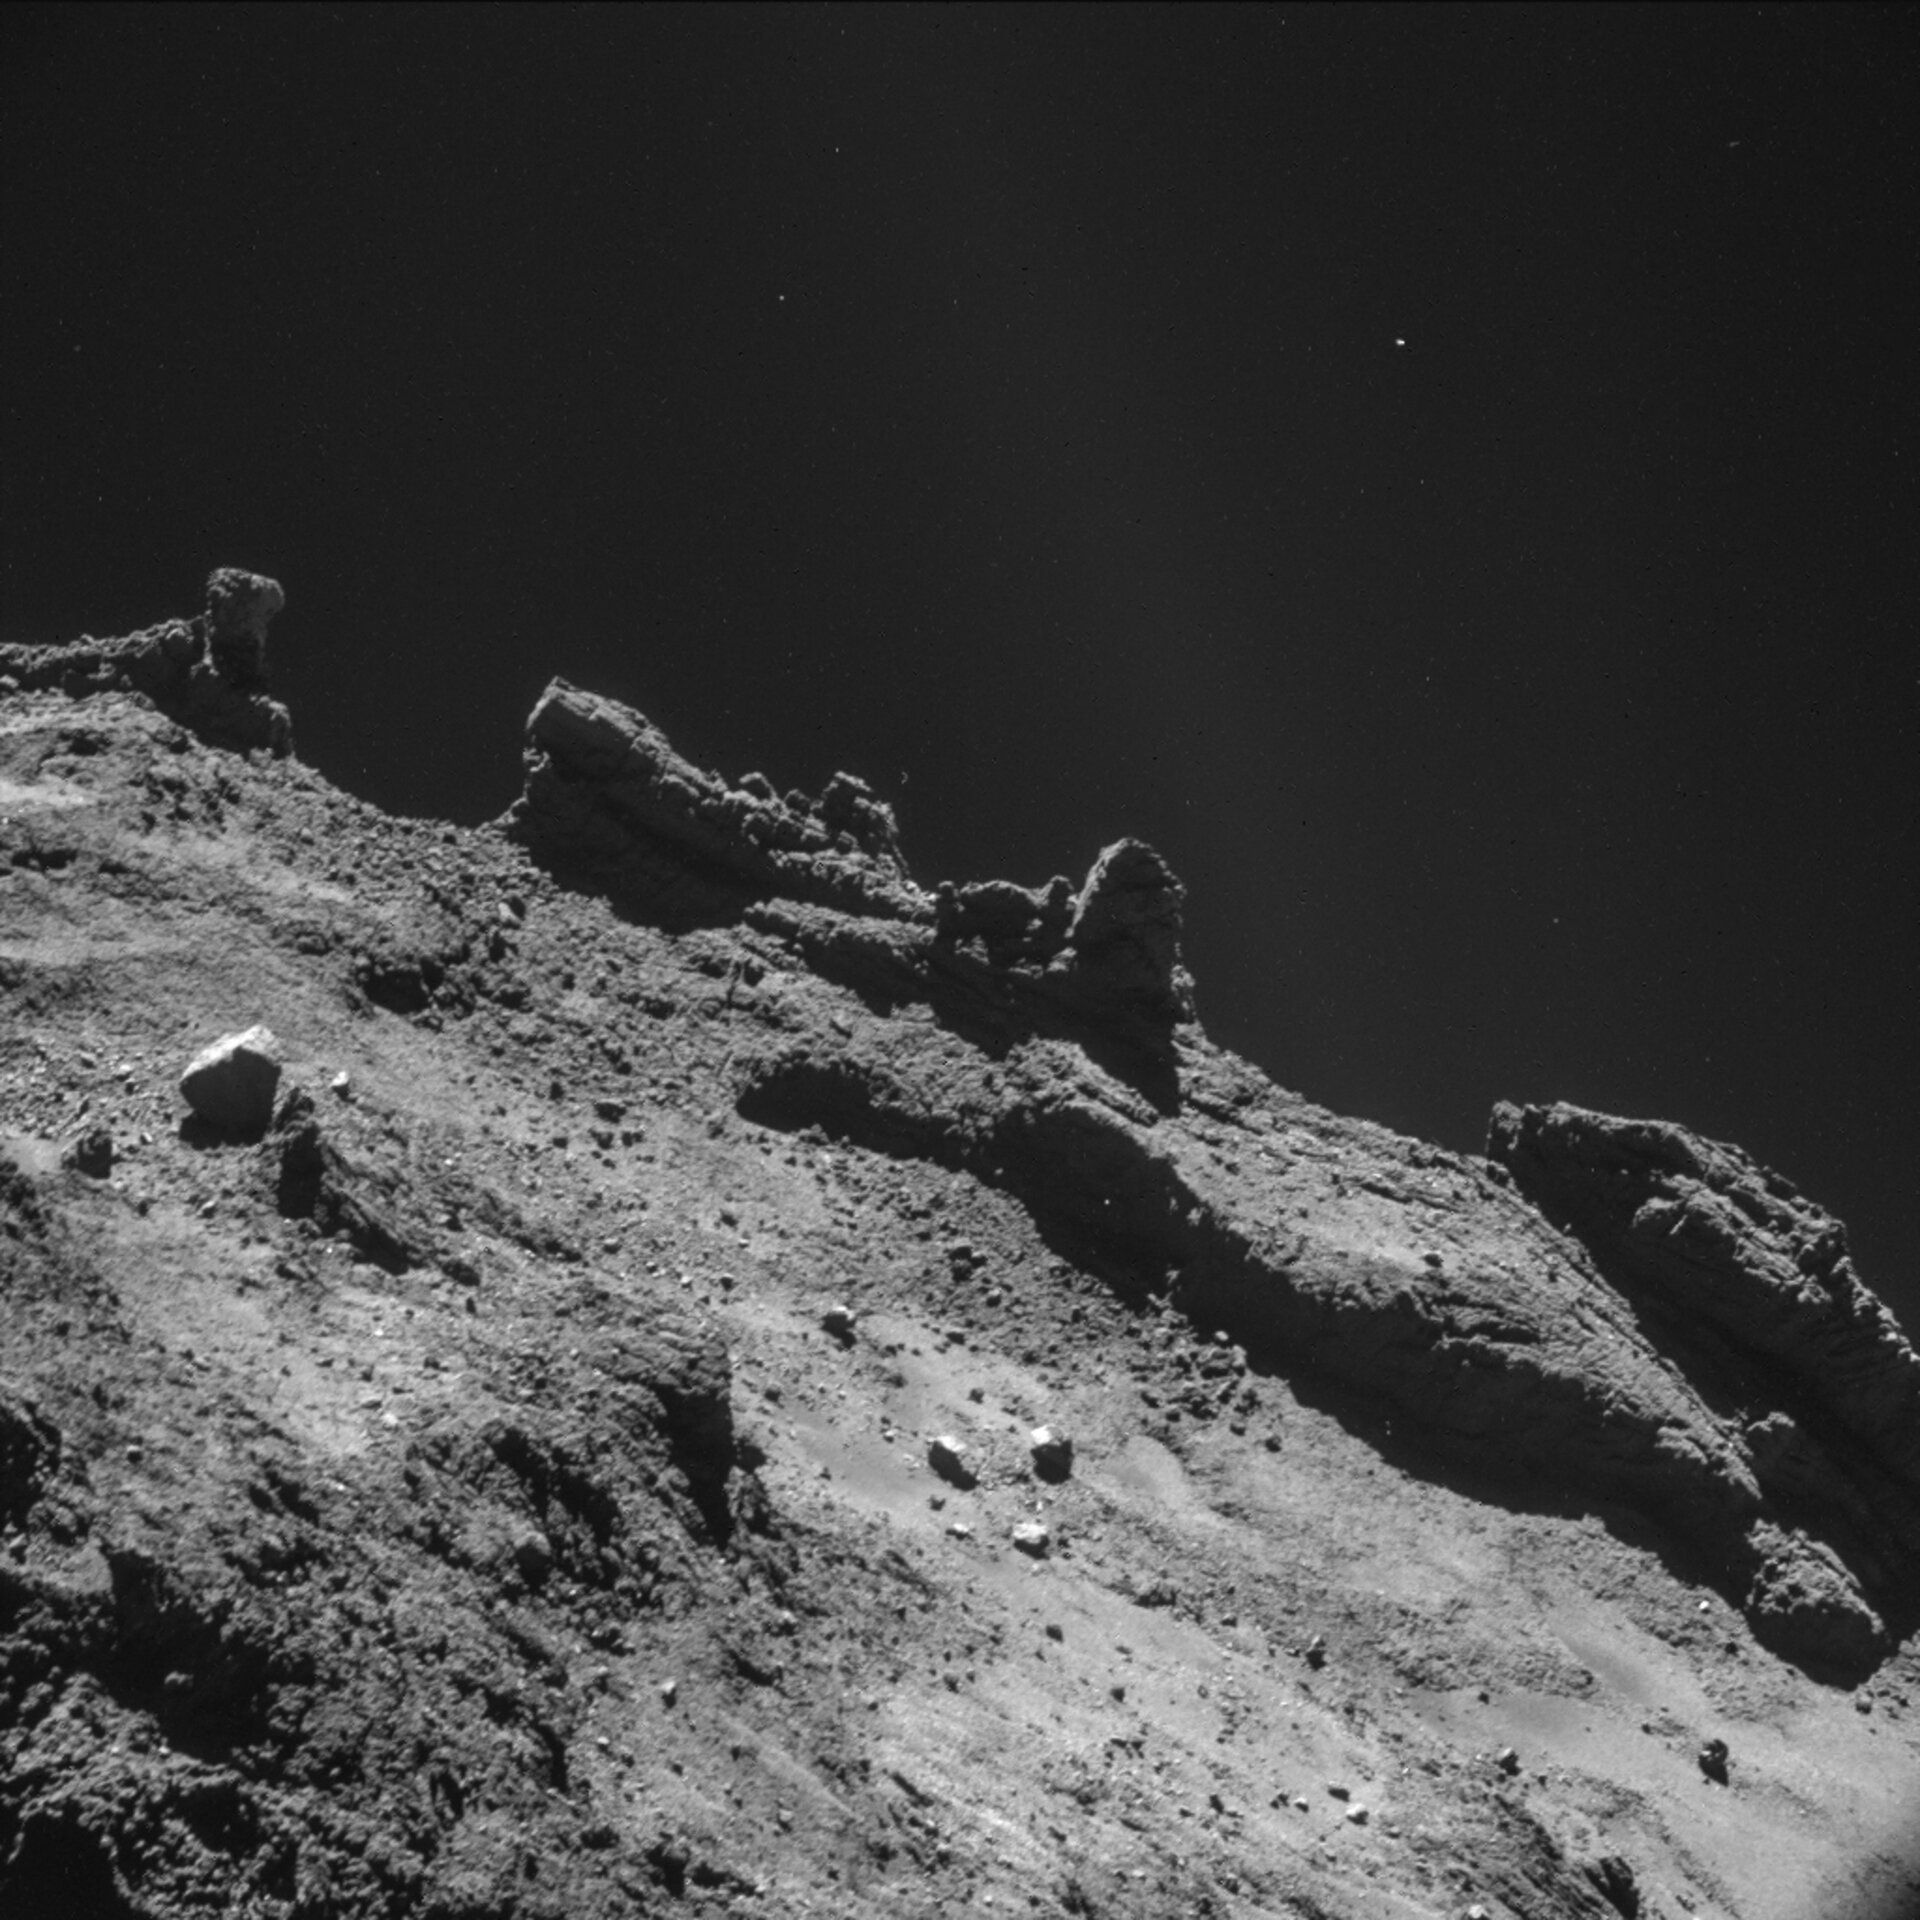 The rough surface of comet 67P/Churyumov-Grasimenko